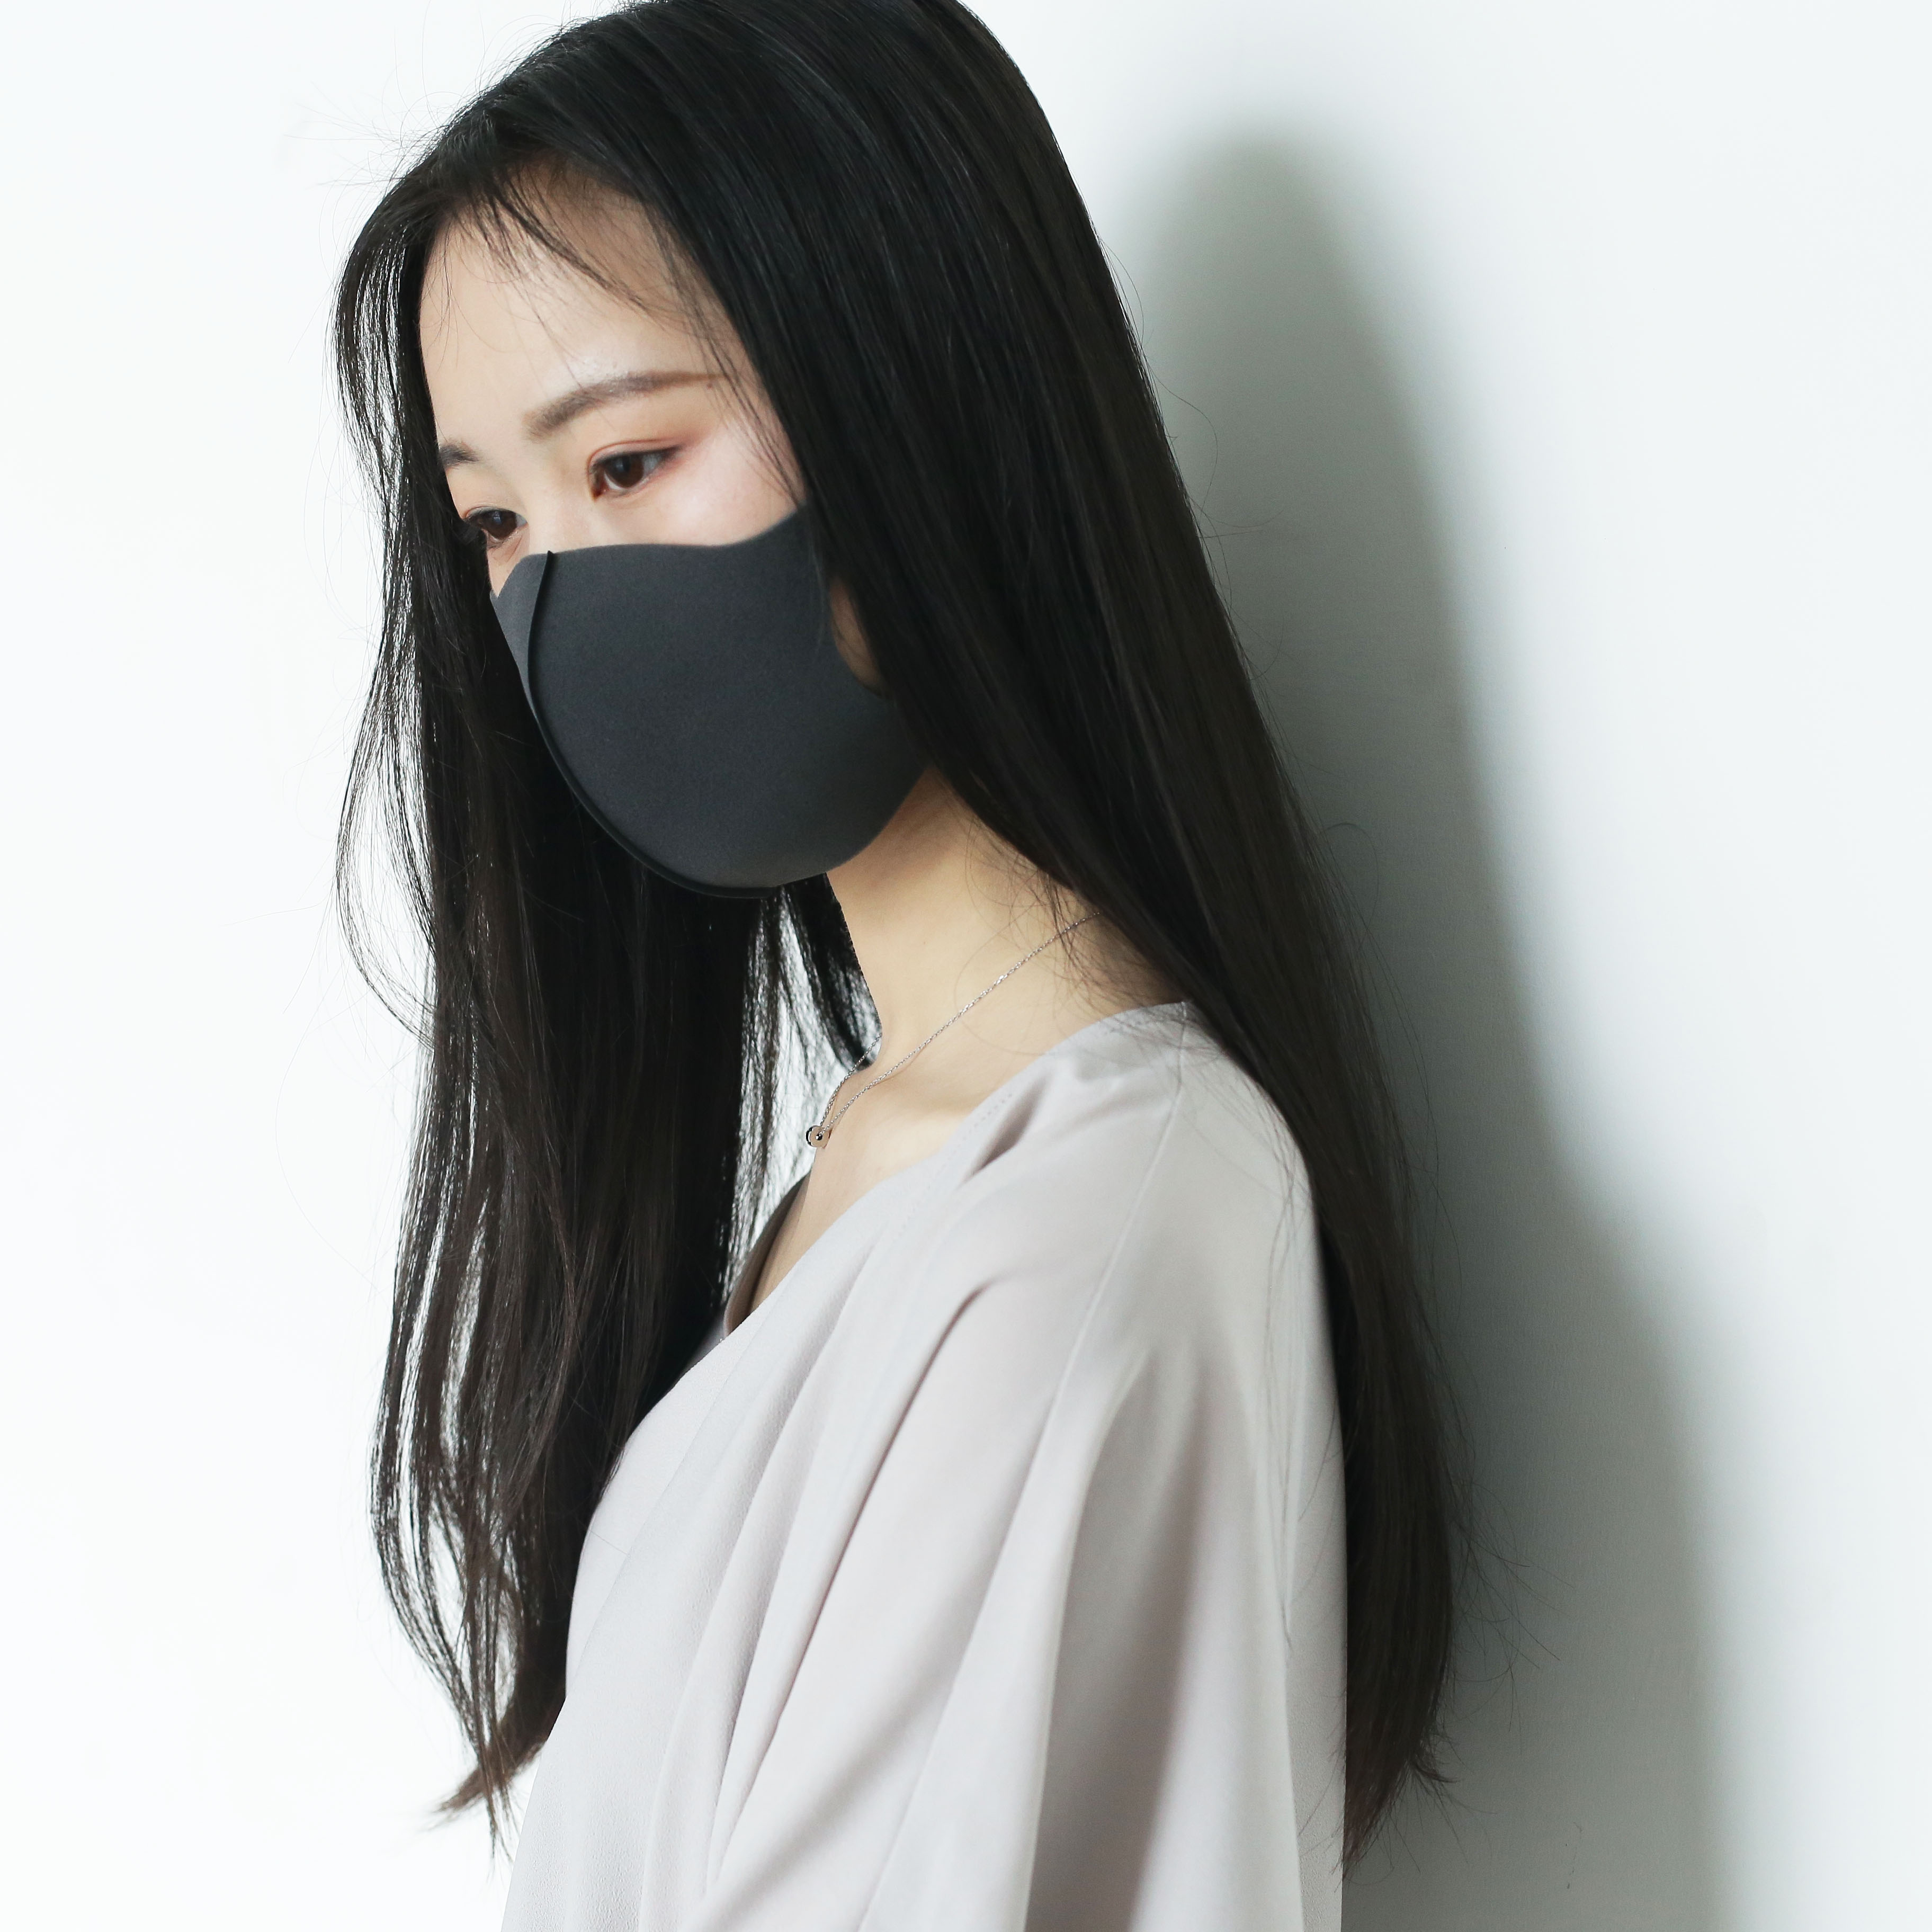 终于知道日本女生爱戴口罩的原因！这100位妹子戴口罩的前后对比照真相了… | 哈啰日本